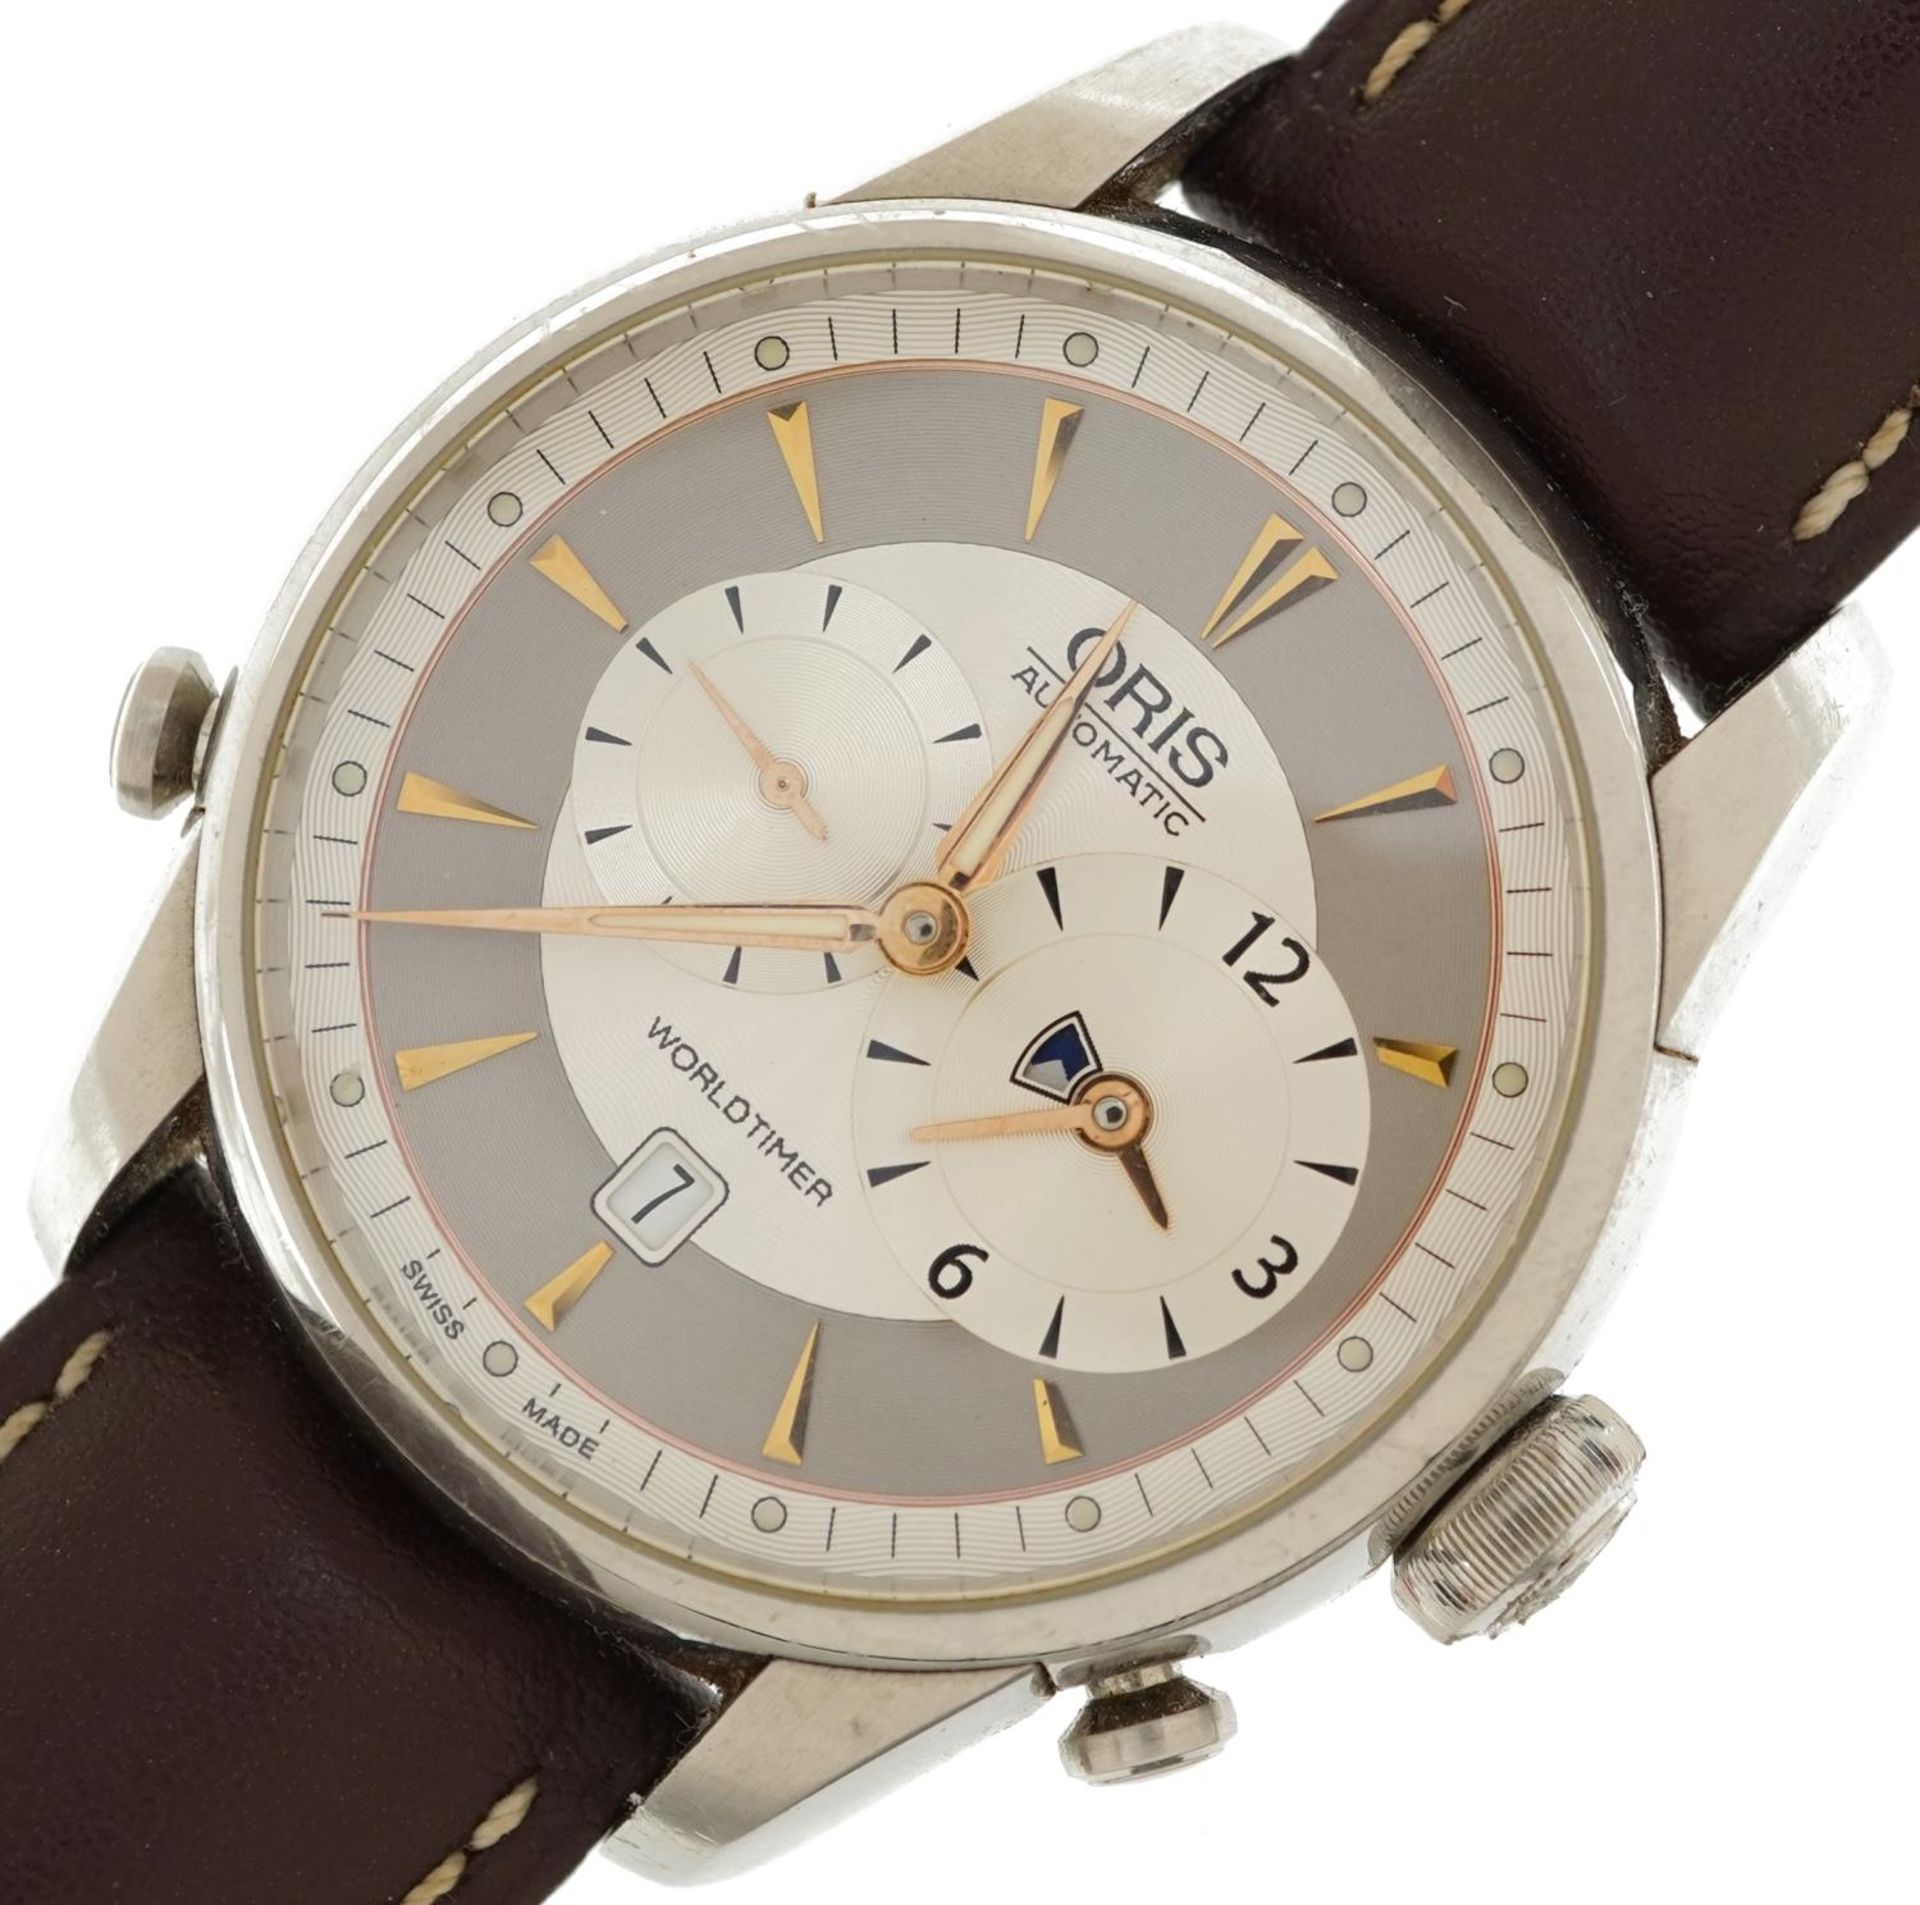 Oris, gentlemen's stainless steel Oris Worldtimer automatic wristwatch, model 7581, the case 42mm in